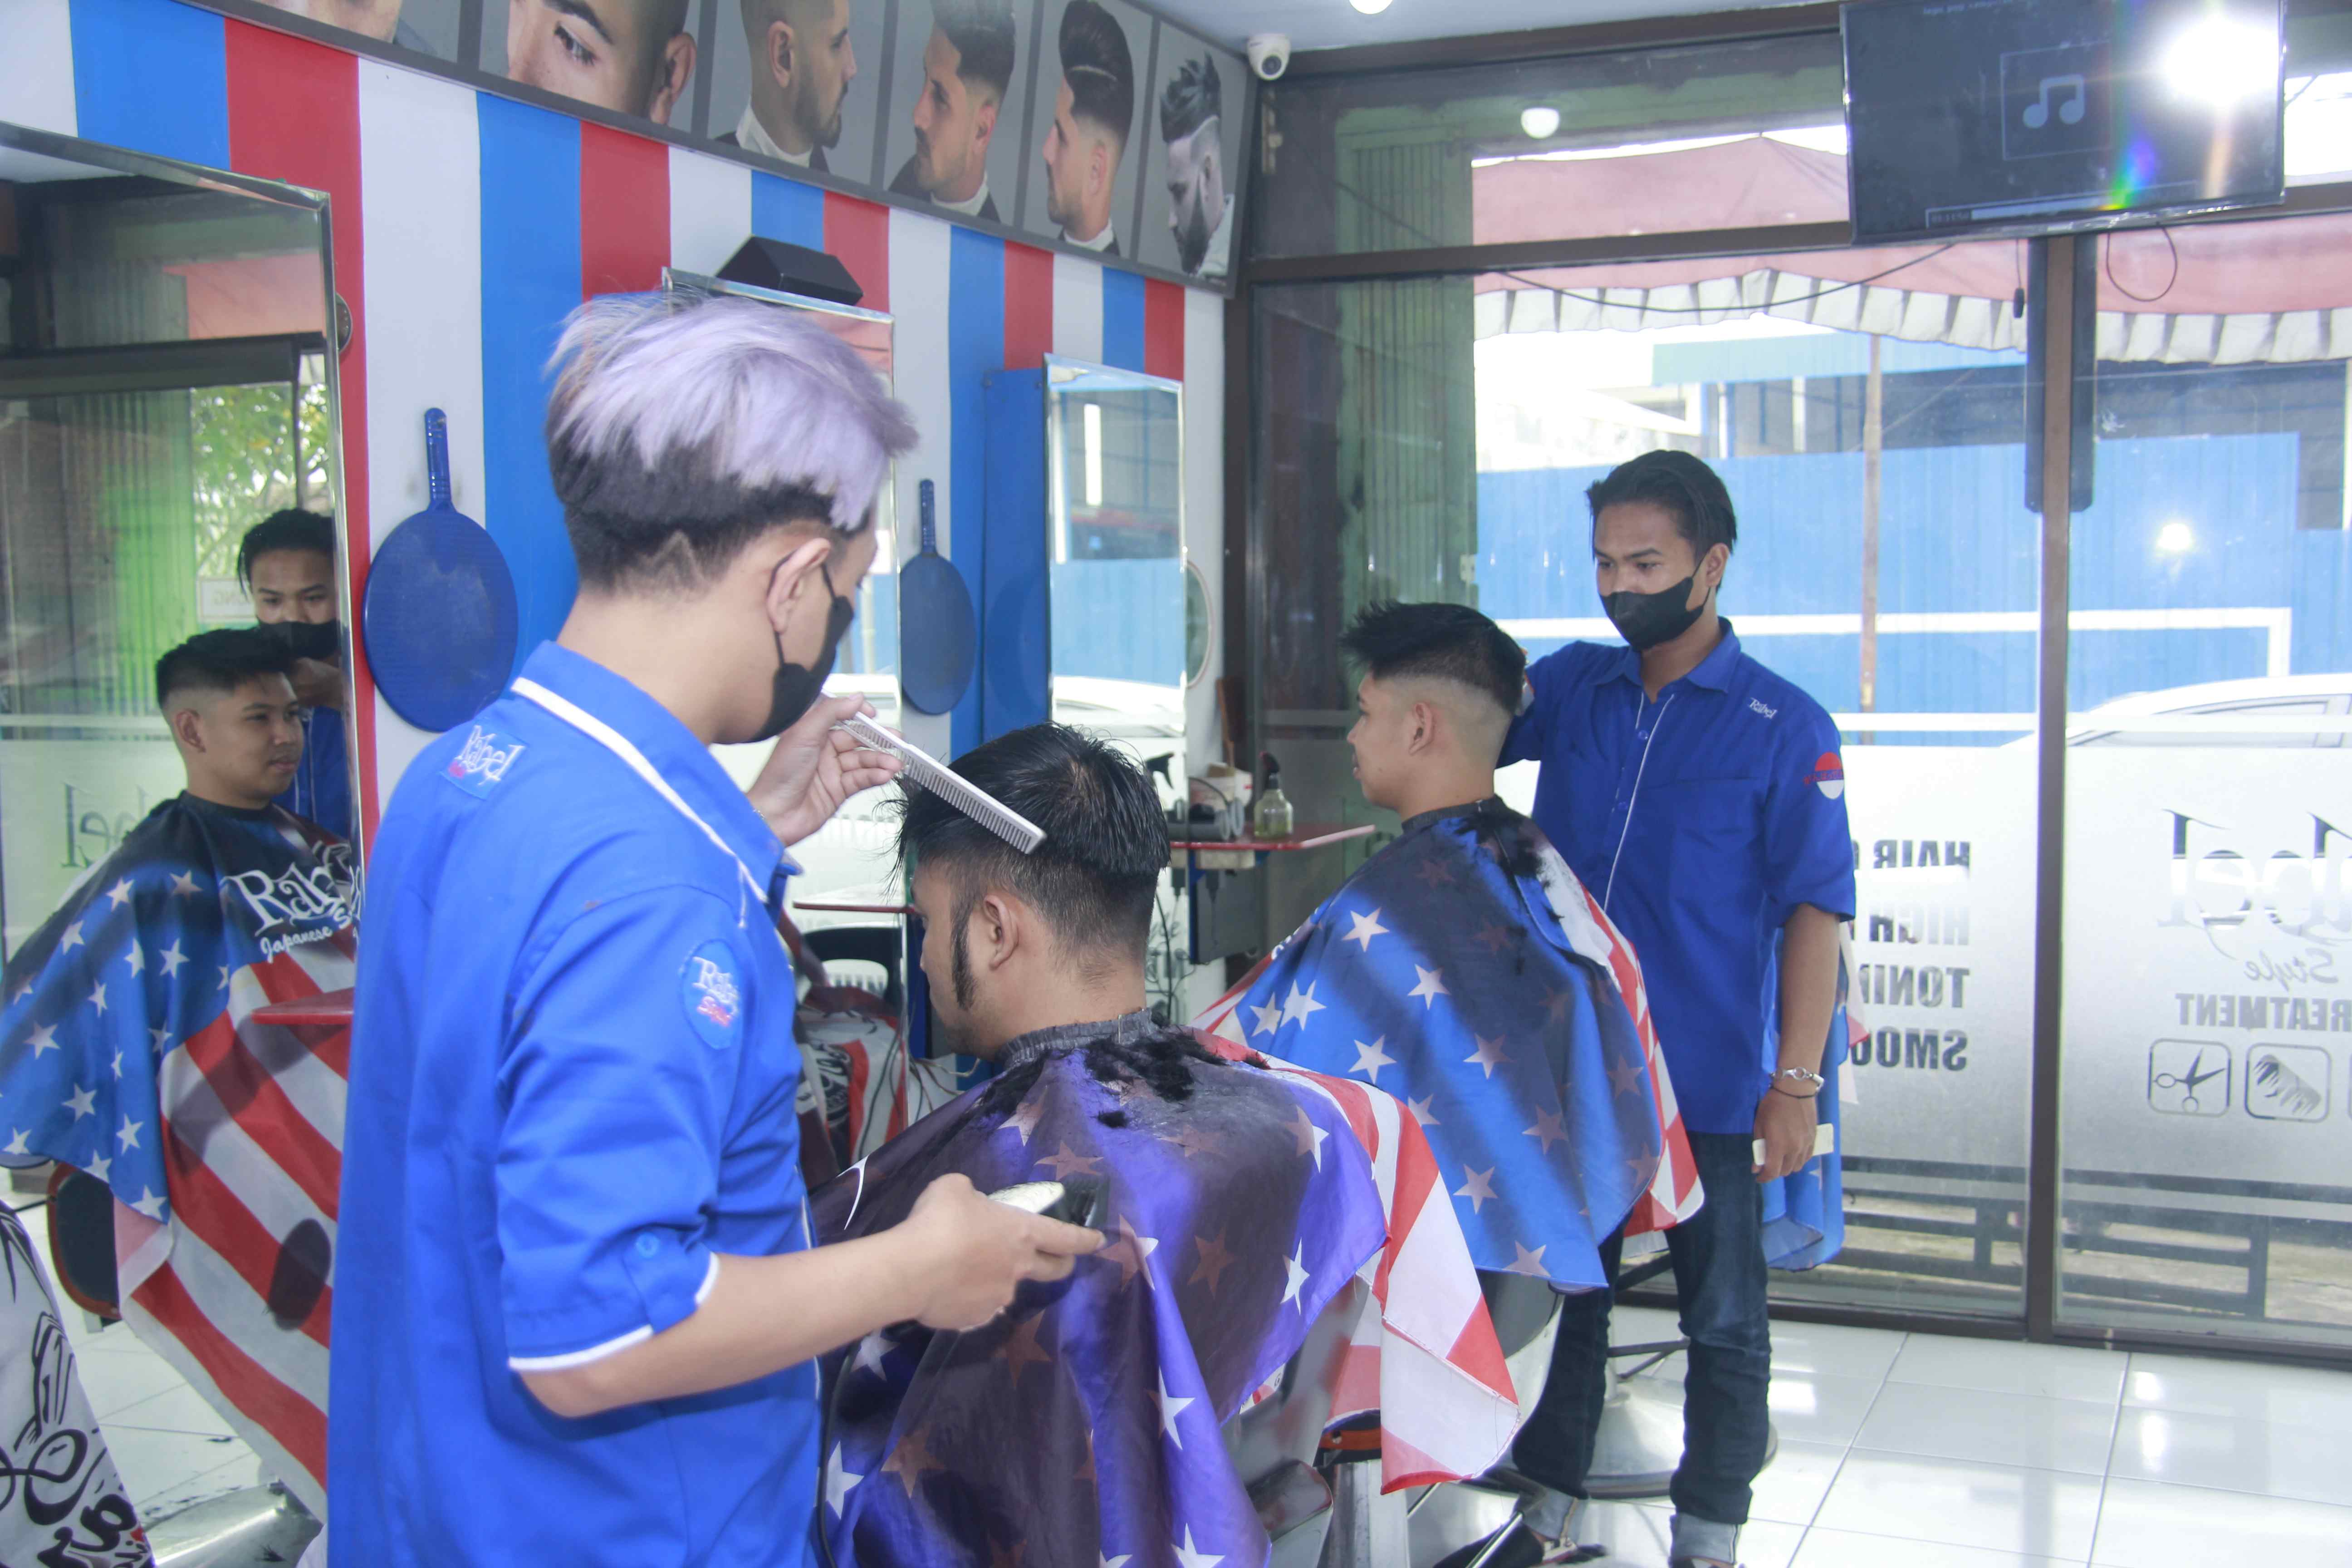 Rekomendasi Tempat Cukur Rambut Di Kecamatan Blimbing Profesional